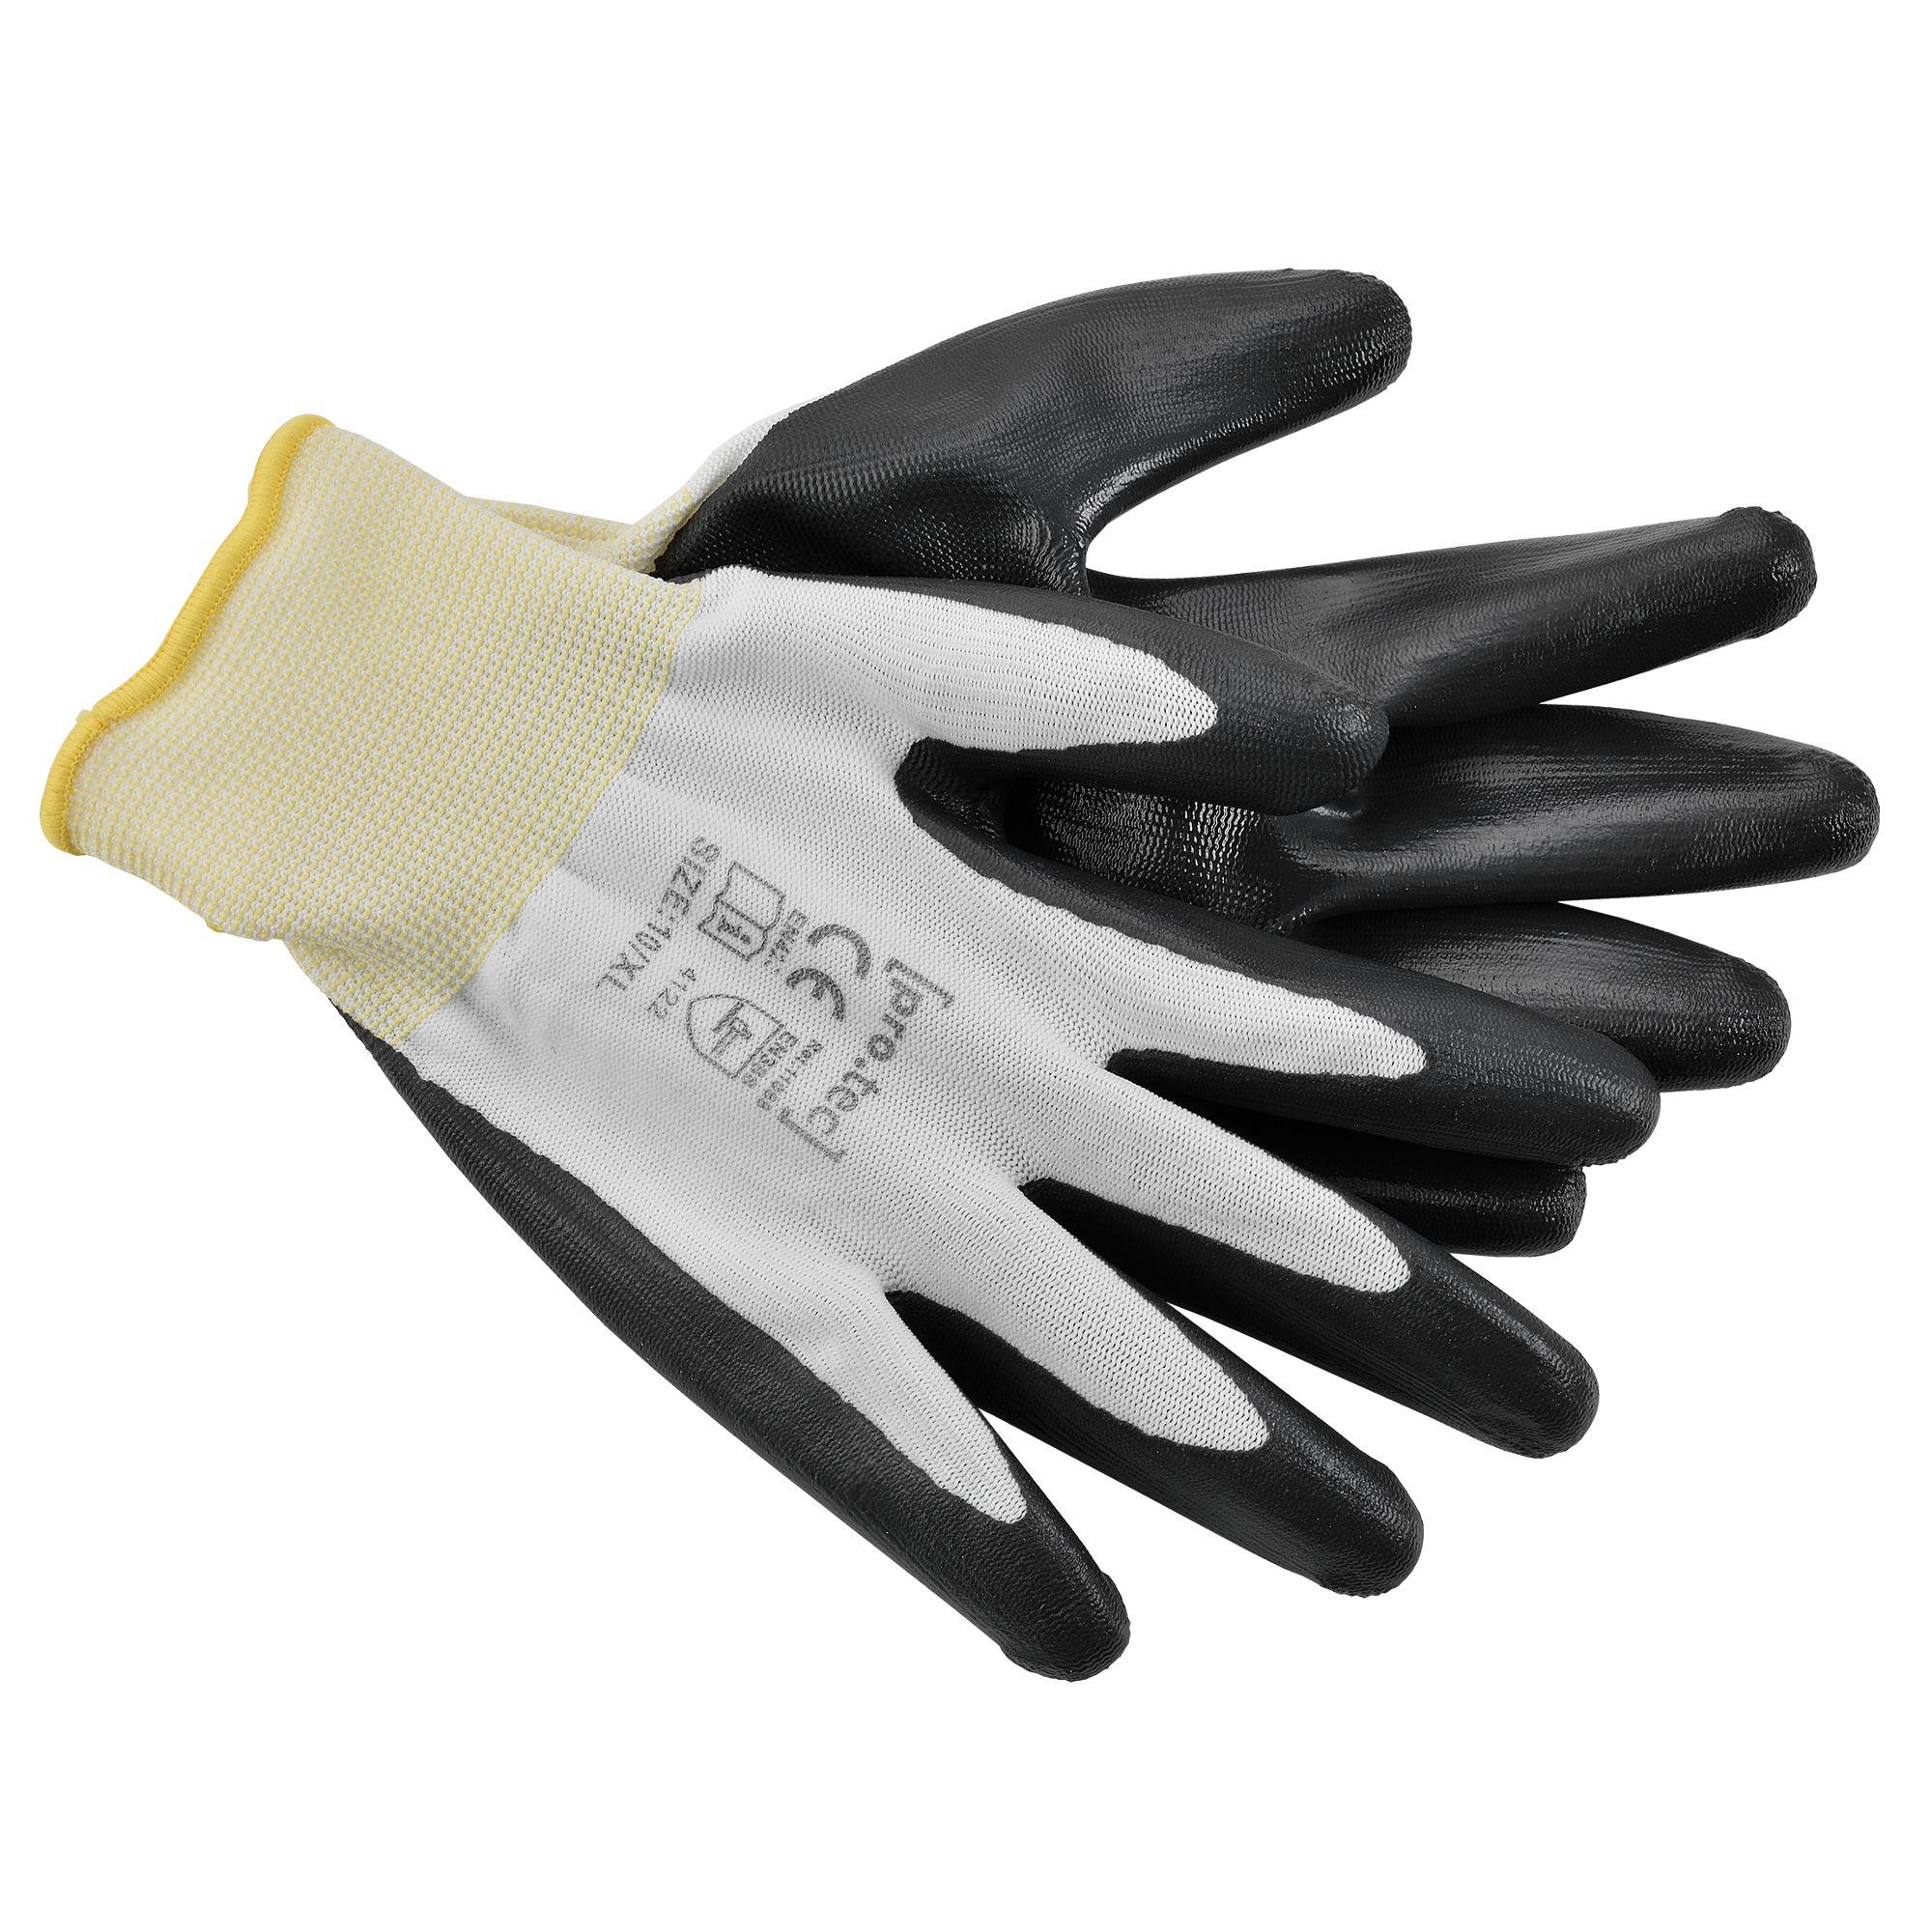 [pro.tec]® Ochranné rukavice AAGG-4303 - 24 párů - XL - H.T. Trade Service GmbH & Co. KG